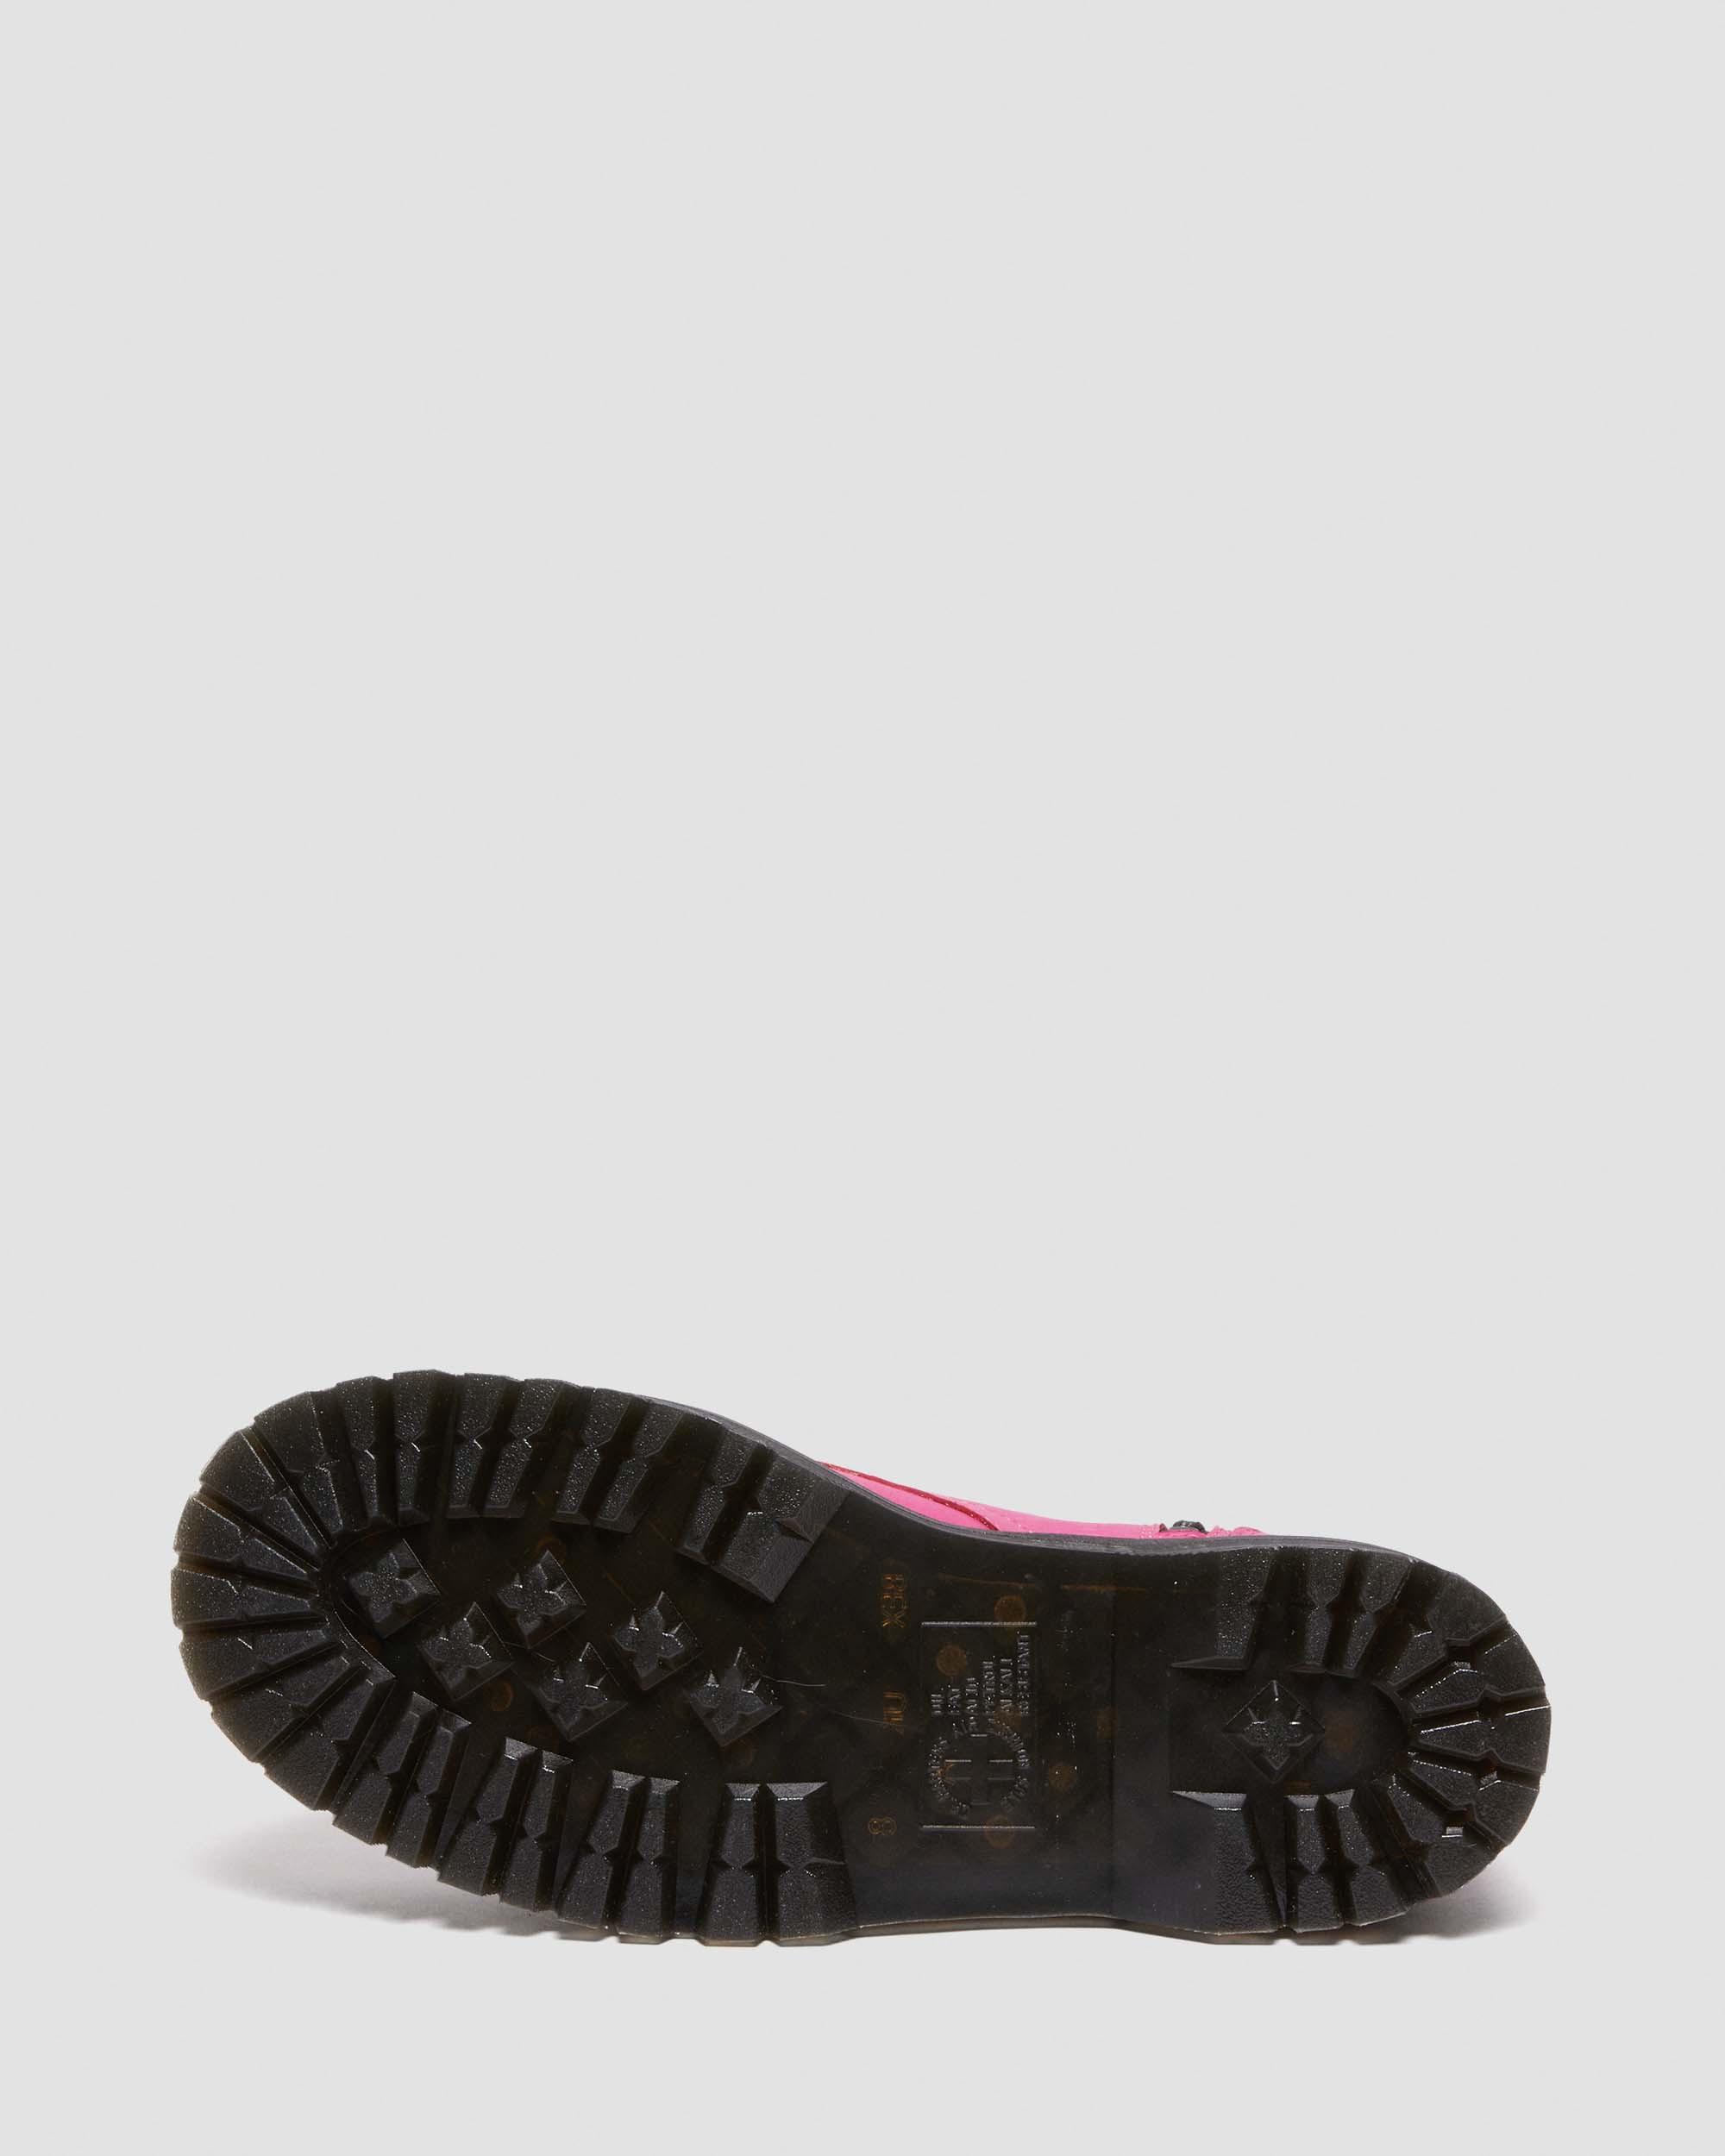 Jadon Boot Pisa Leather Platforms, Thrift Pink | Dr. Martens